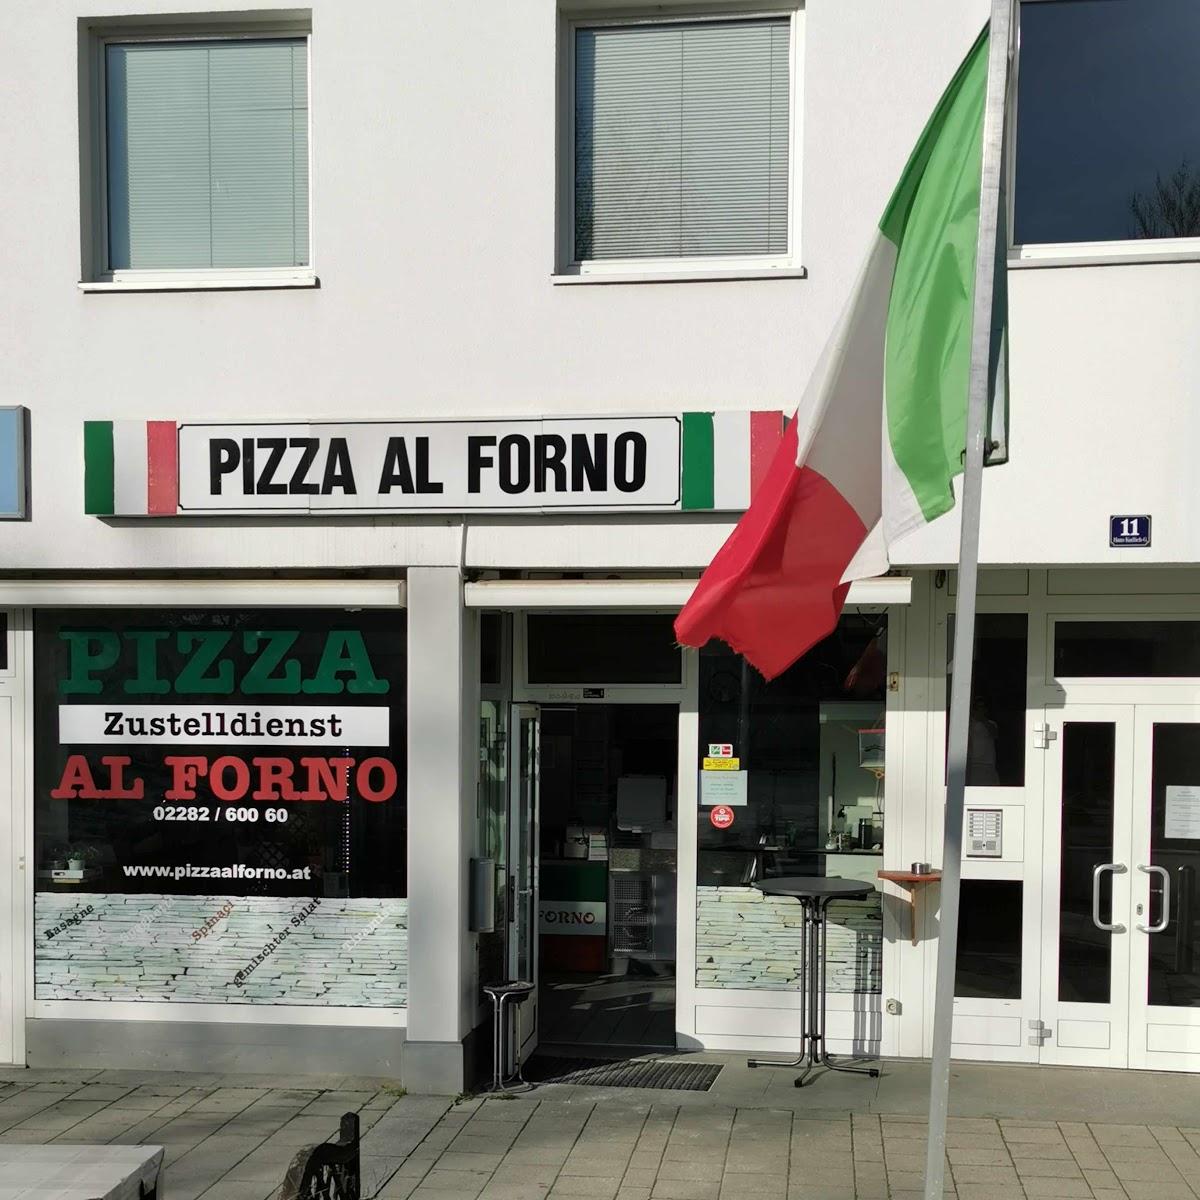 Restaurant "Pizza Al Forno" in Gänserndorf